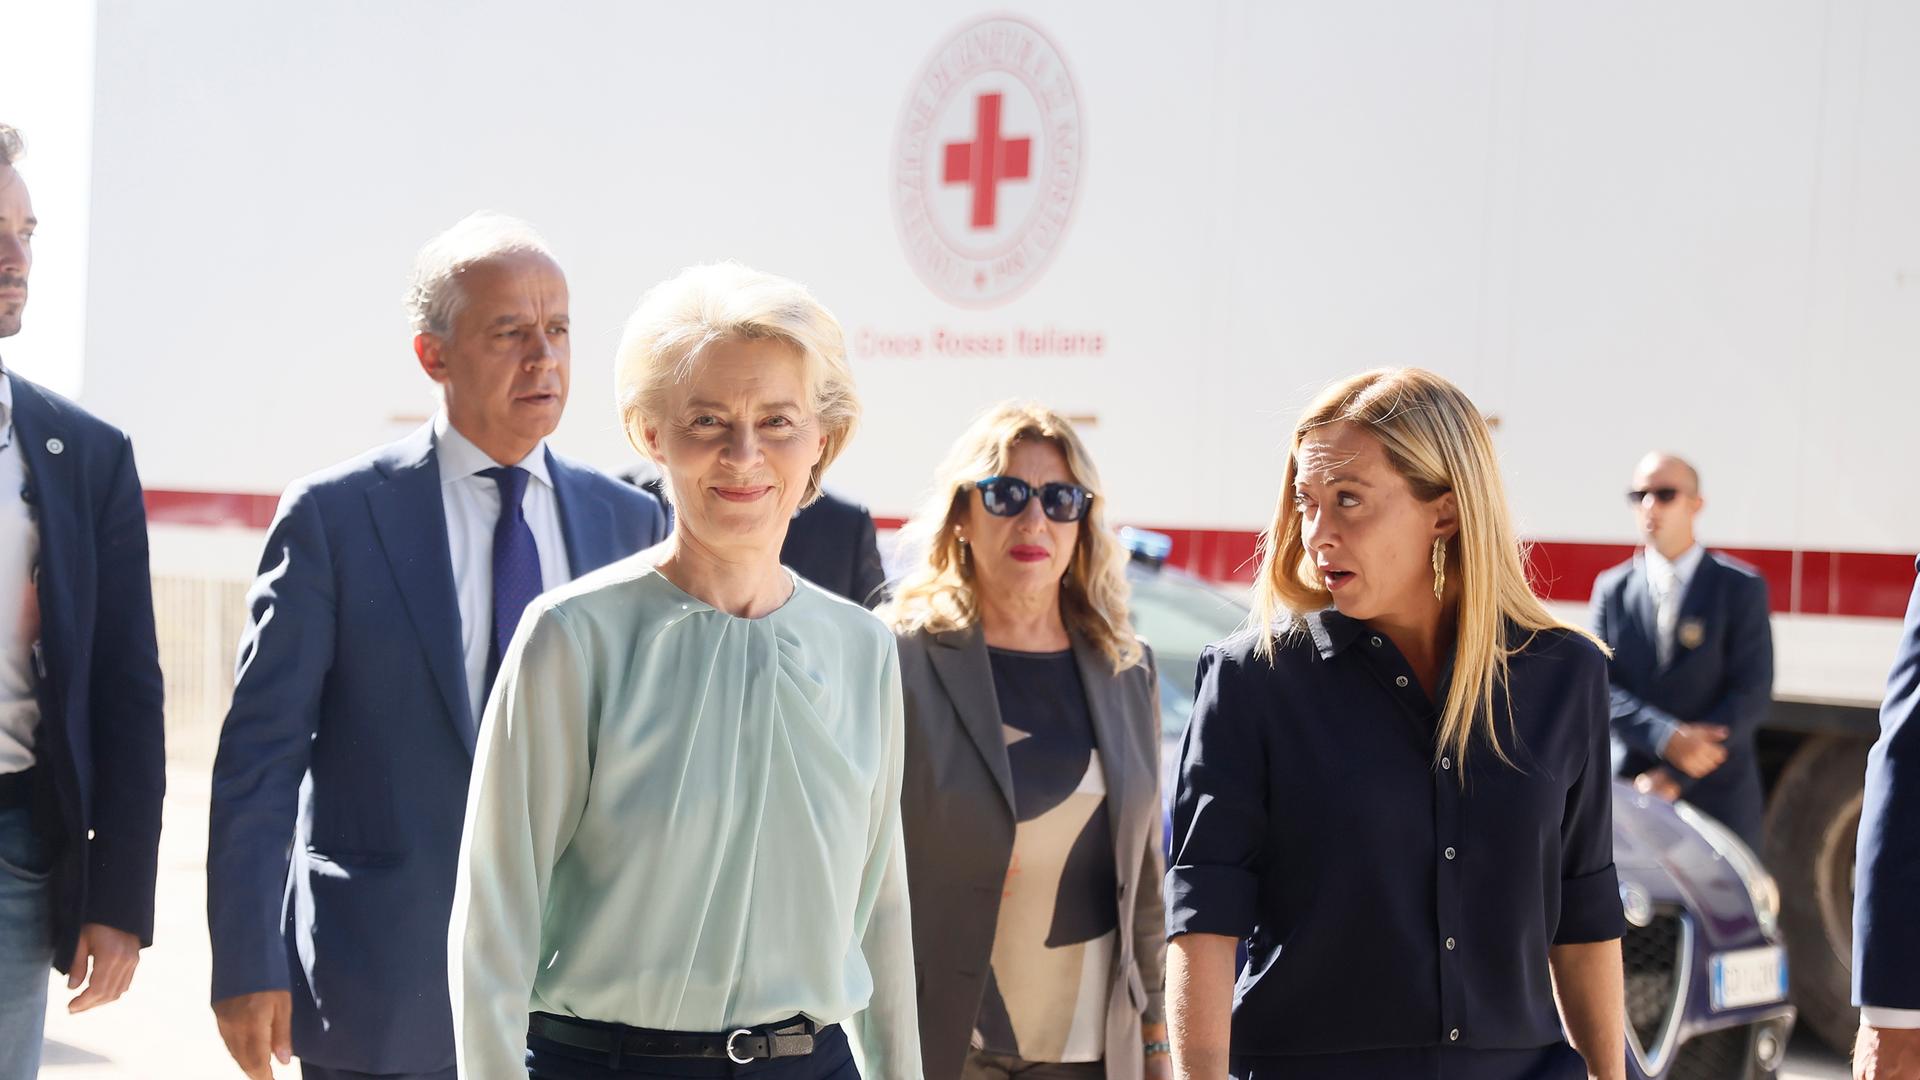 Die Präsidentin der Europäischen Kommission, von der Leyen, lächelt bei einem Besuch der Insel Lampedusa in die Kamera, rechts von ihr steht Italiens Ministerpräsidentin Meloni.